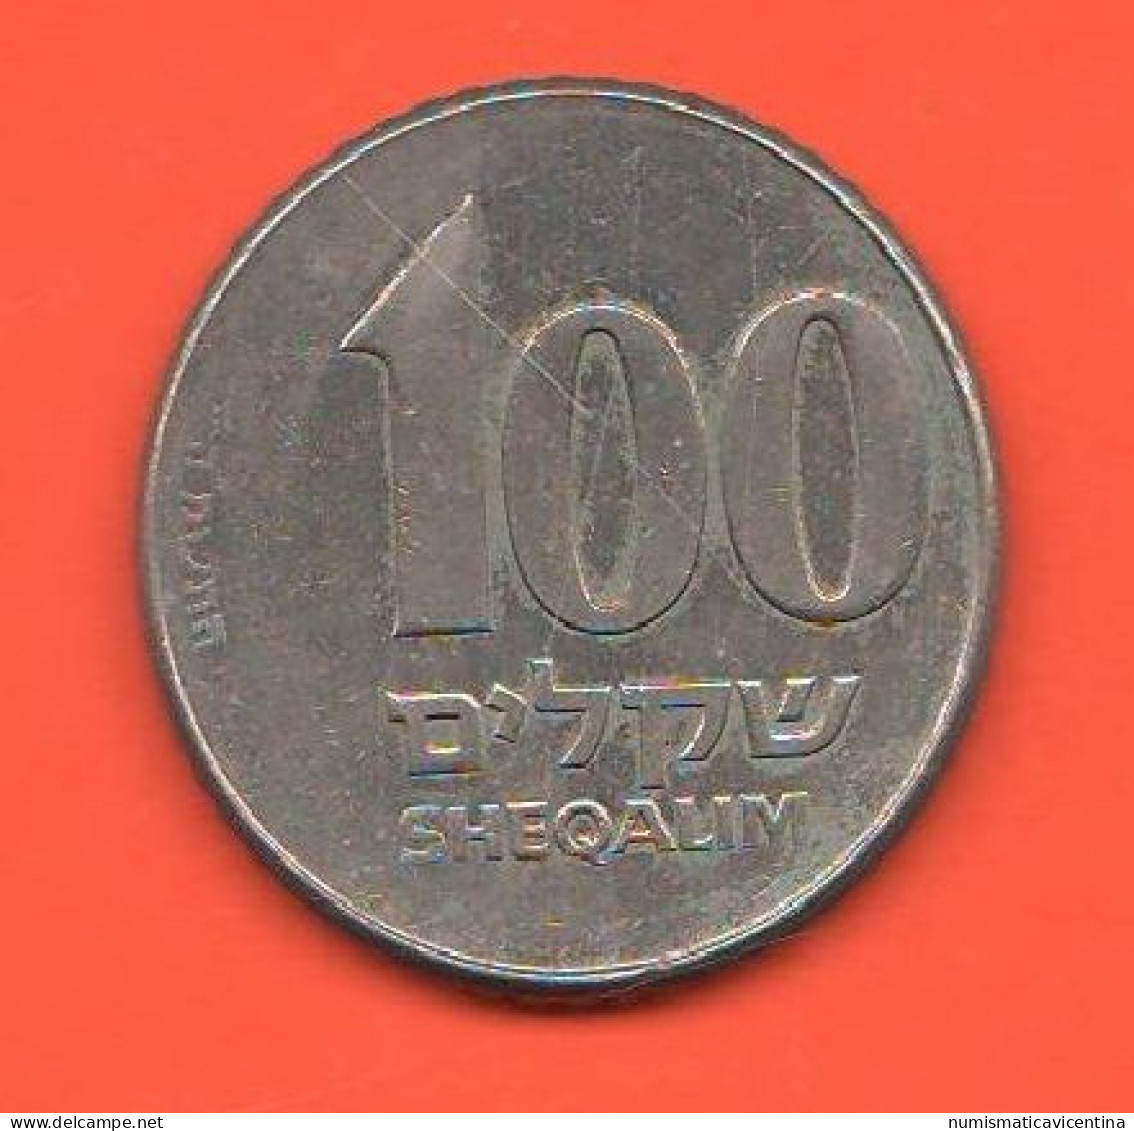 Israel 100 Sheqalim Sicli 1985 Israele Nickel  Coin - Israel